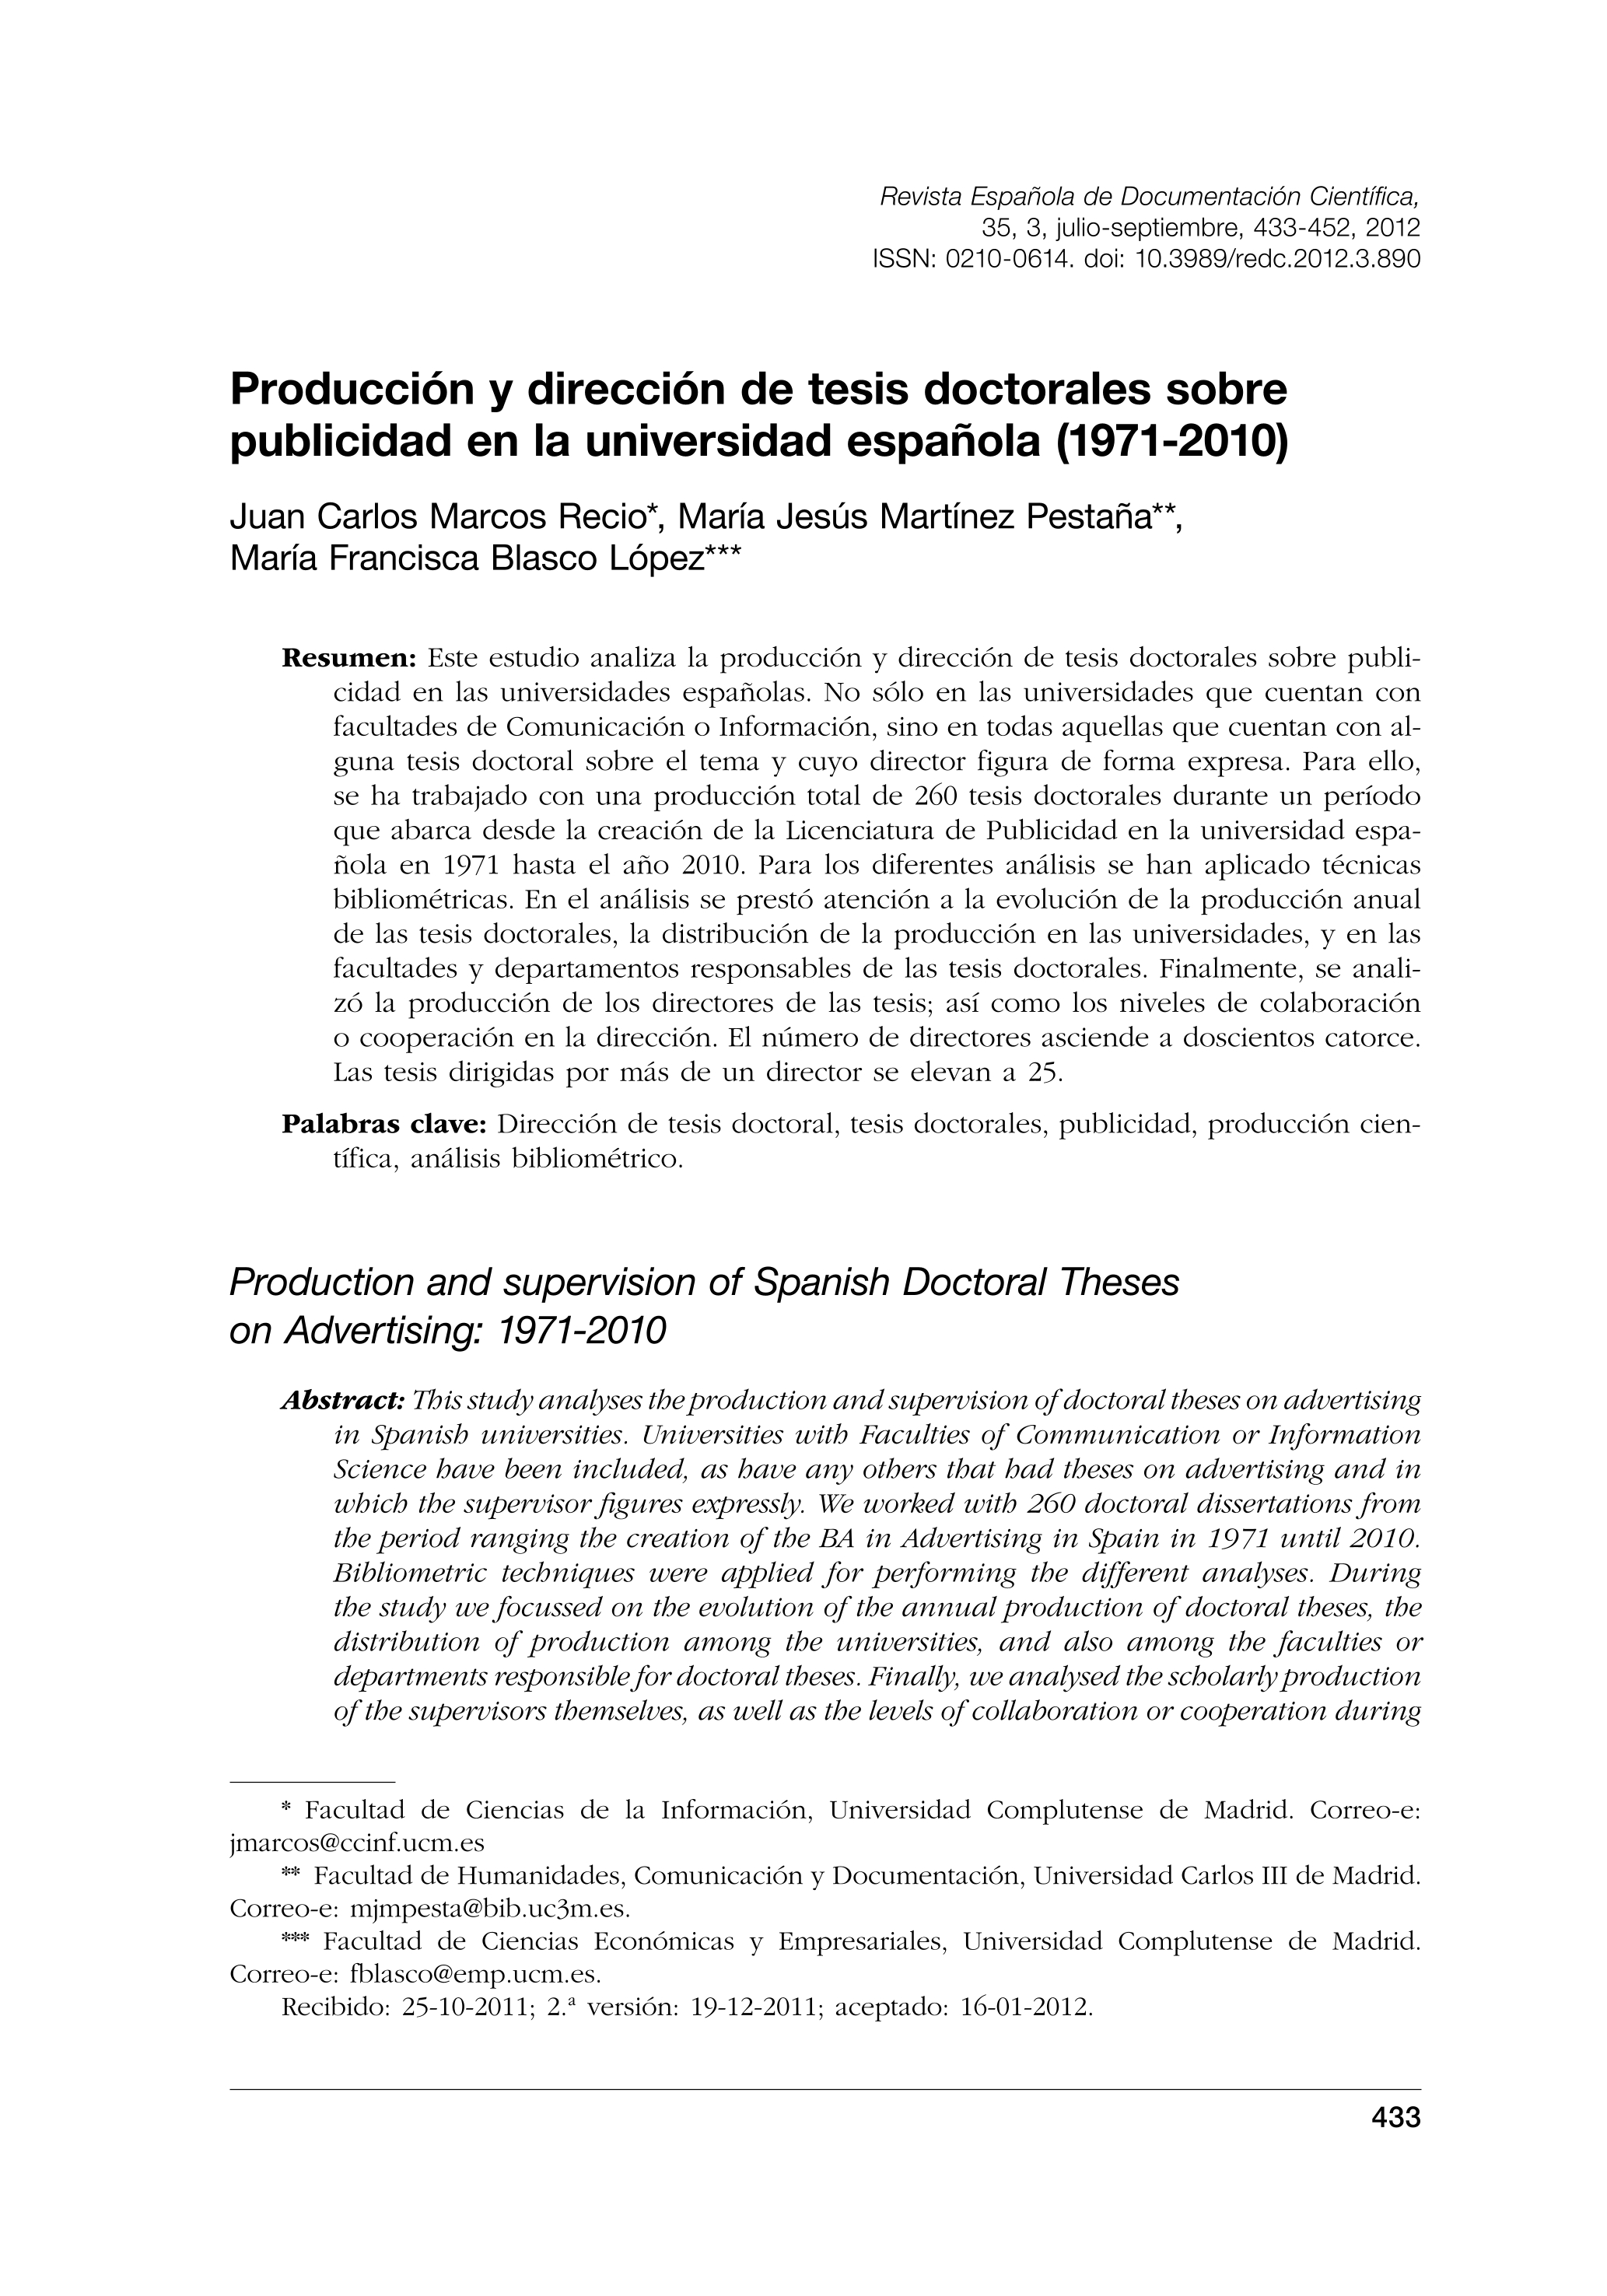 Producción y dirección de tesis doctorales sobre publicidad en la universidad española (1971-2010)